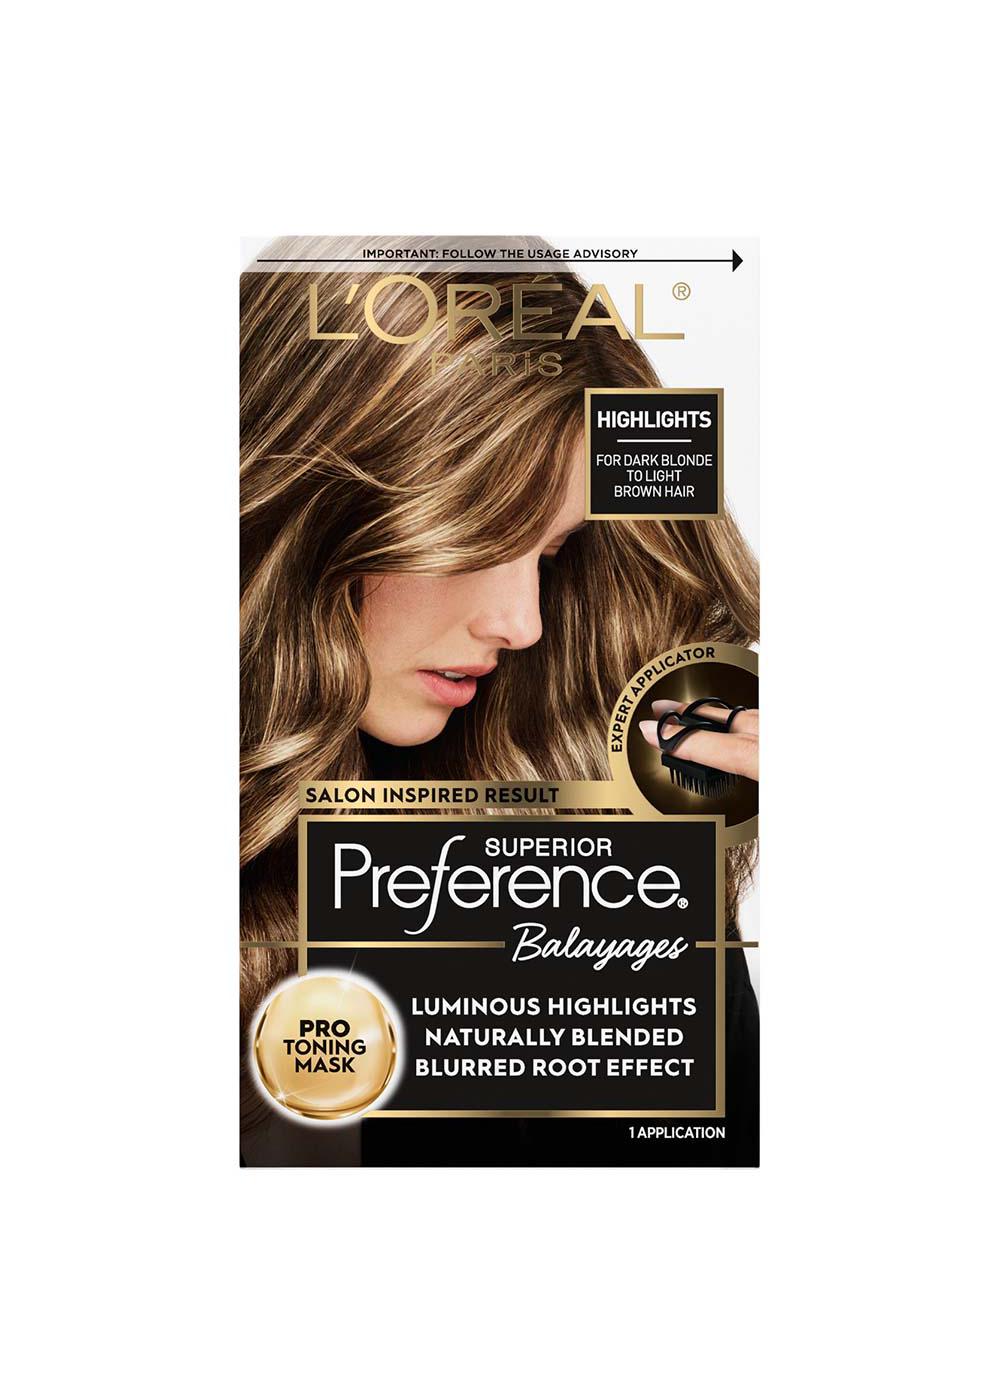 meditativ Bedrag sværge L'Oréal Paris Superior Preference Balayages Highlighting Kit - Dark Blonde  to Light Brown - Shop Hair Color at H-E-B